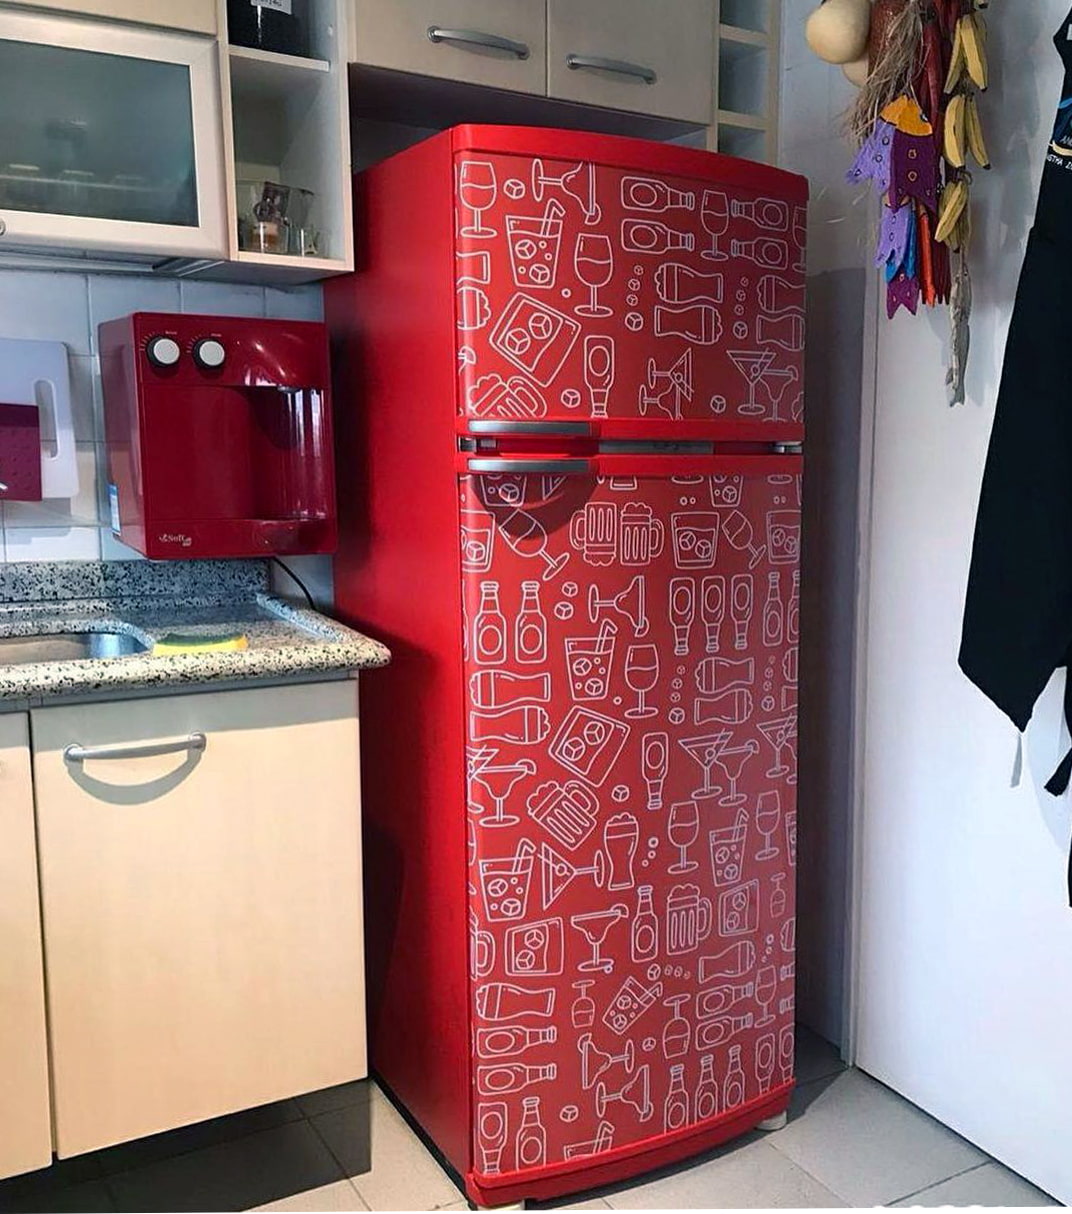 Мастер-класс: как сделать новый дизайн холодильника своими руками - Я Покупаю